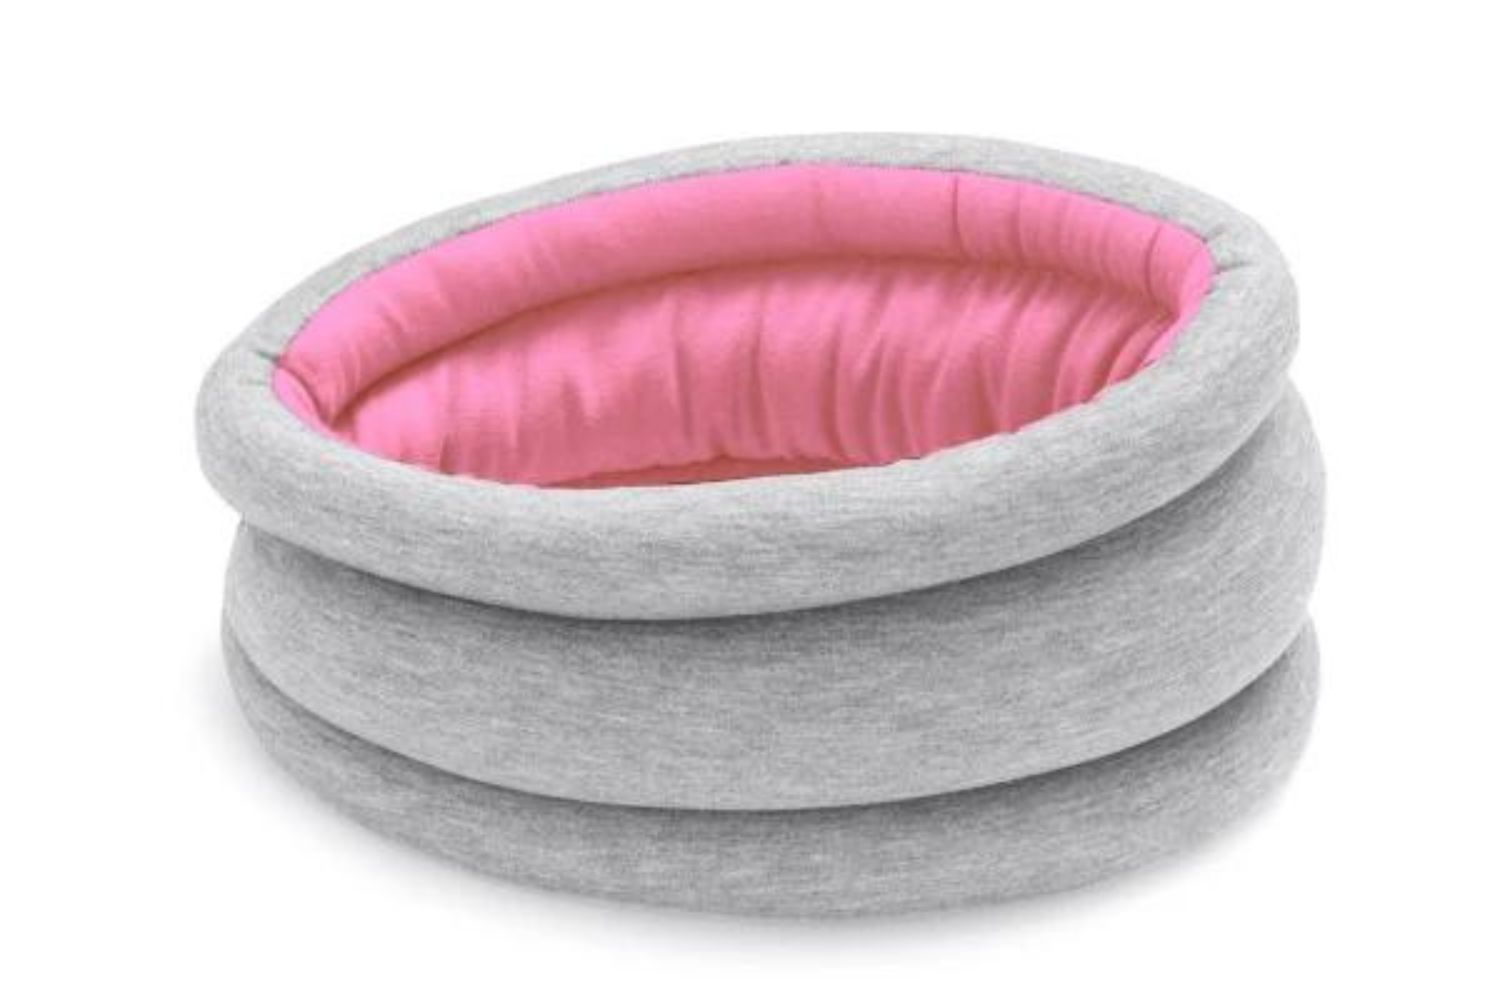 ostrichpillow-pink-eye-mask-neck-pillow